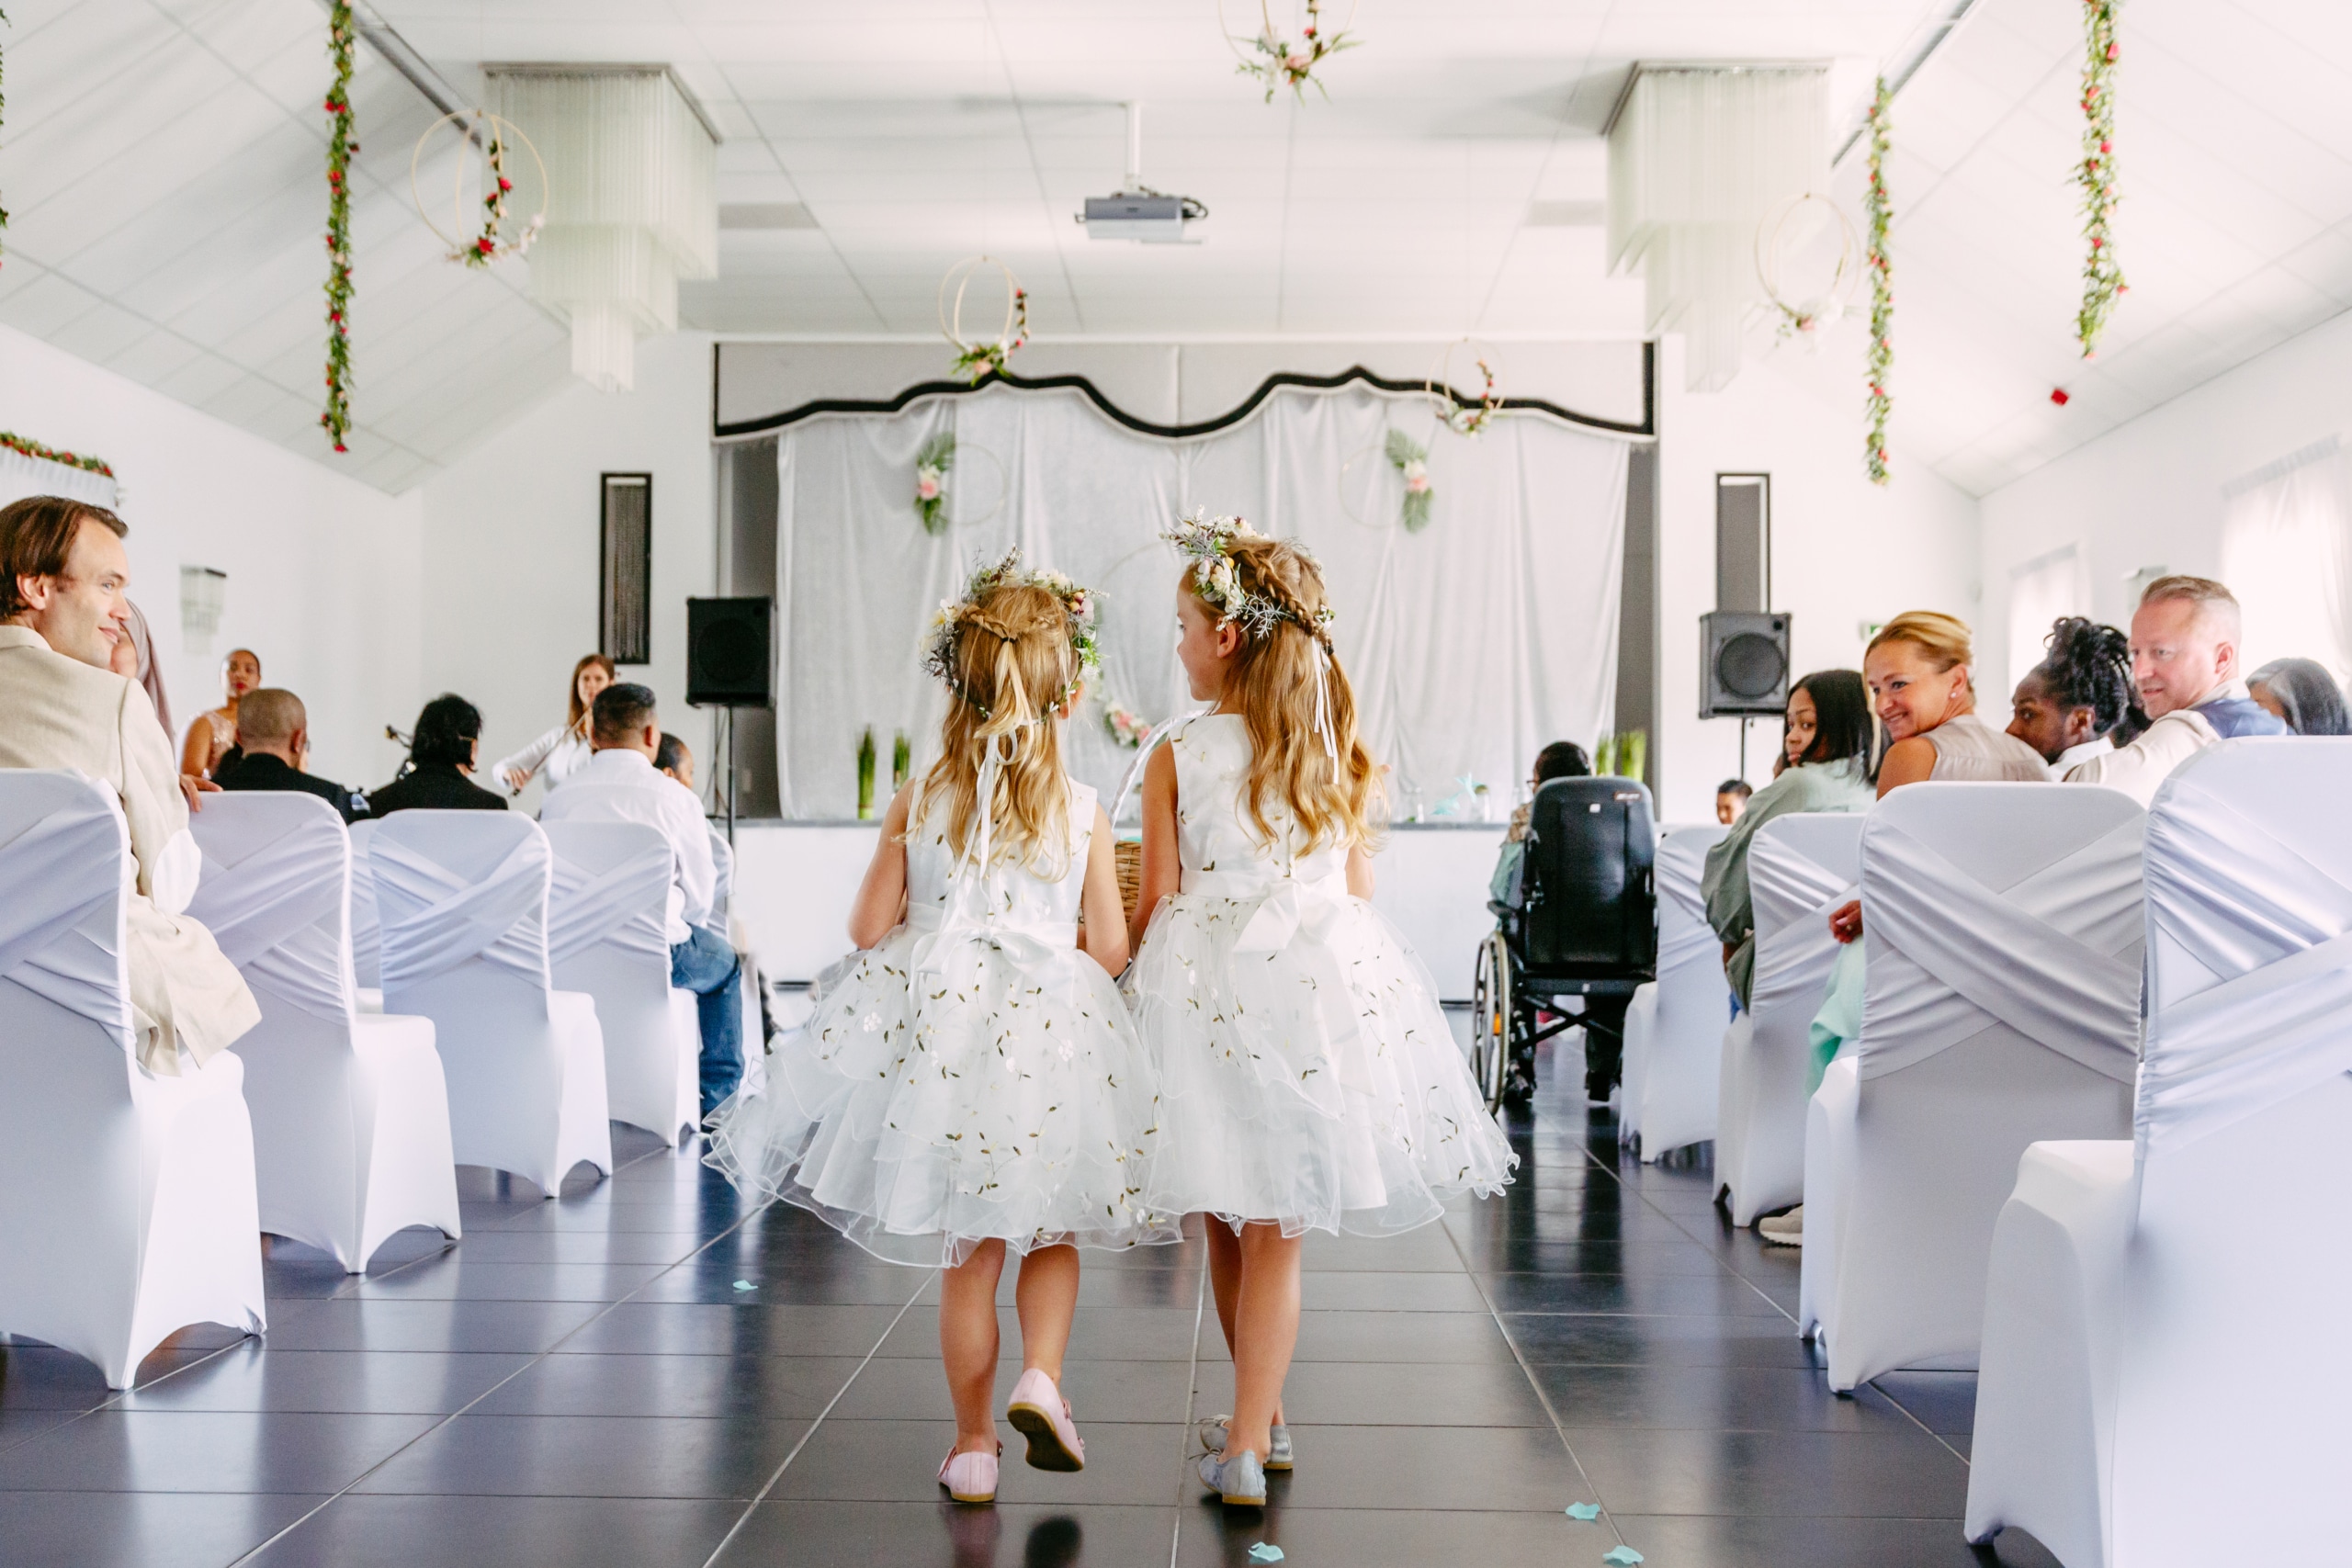 Twee meisjes in witte jurken lopen door een gangpad.